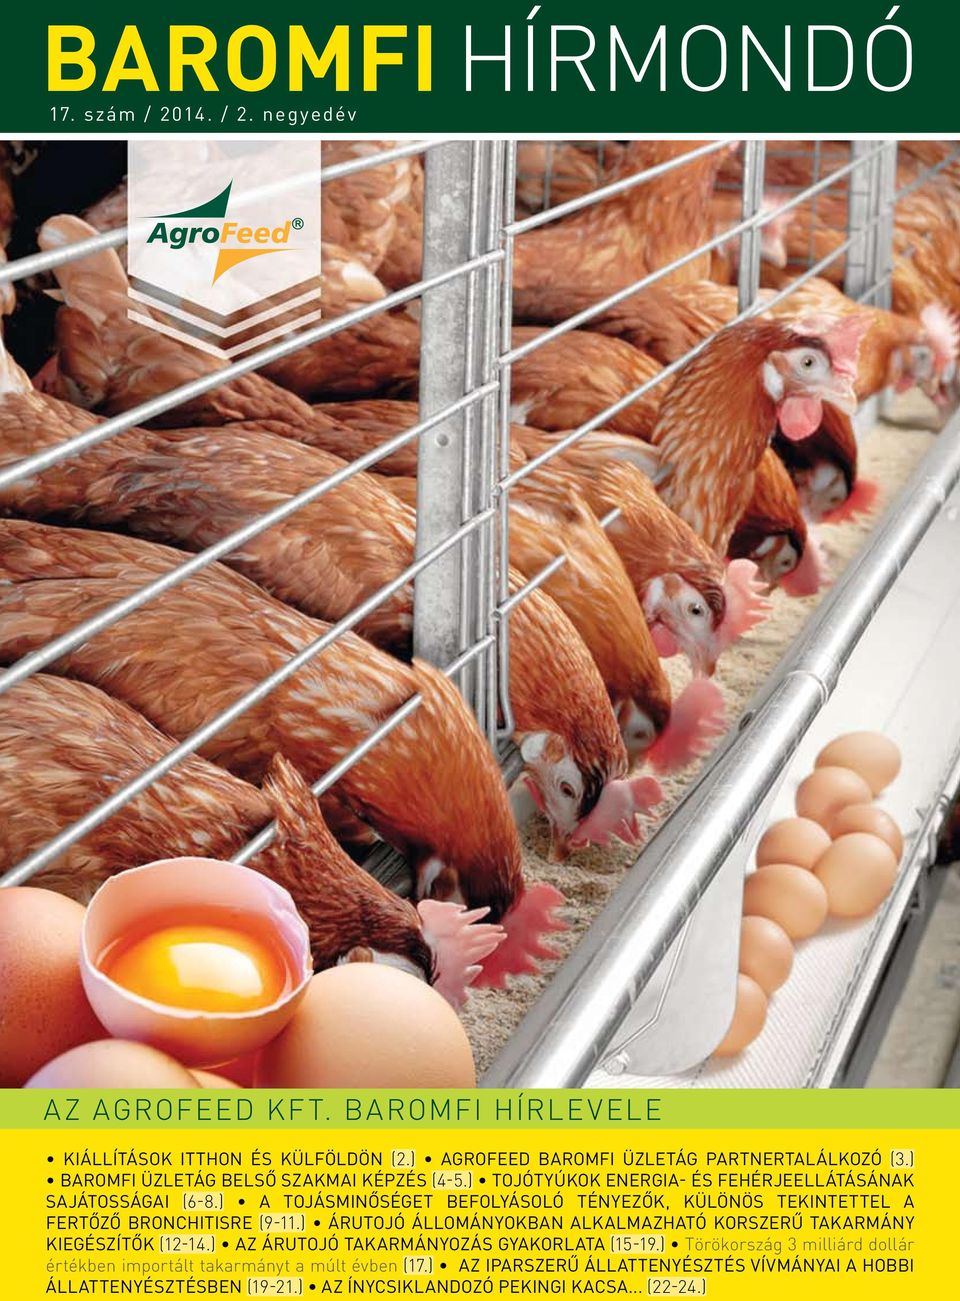 ) A tojásminőséget befolyásoló tényezők, különös tekintettel a fertőző bronchitisre (9-11.) Árutojó állományokban alkalmazható korszerű takarmány kiegészítők (12-14.